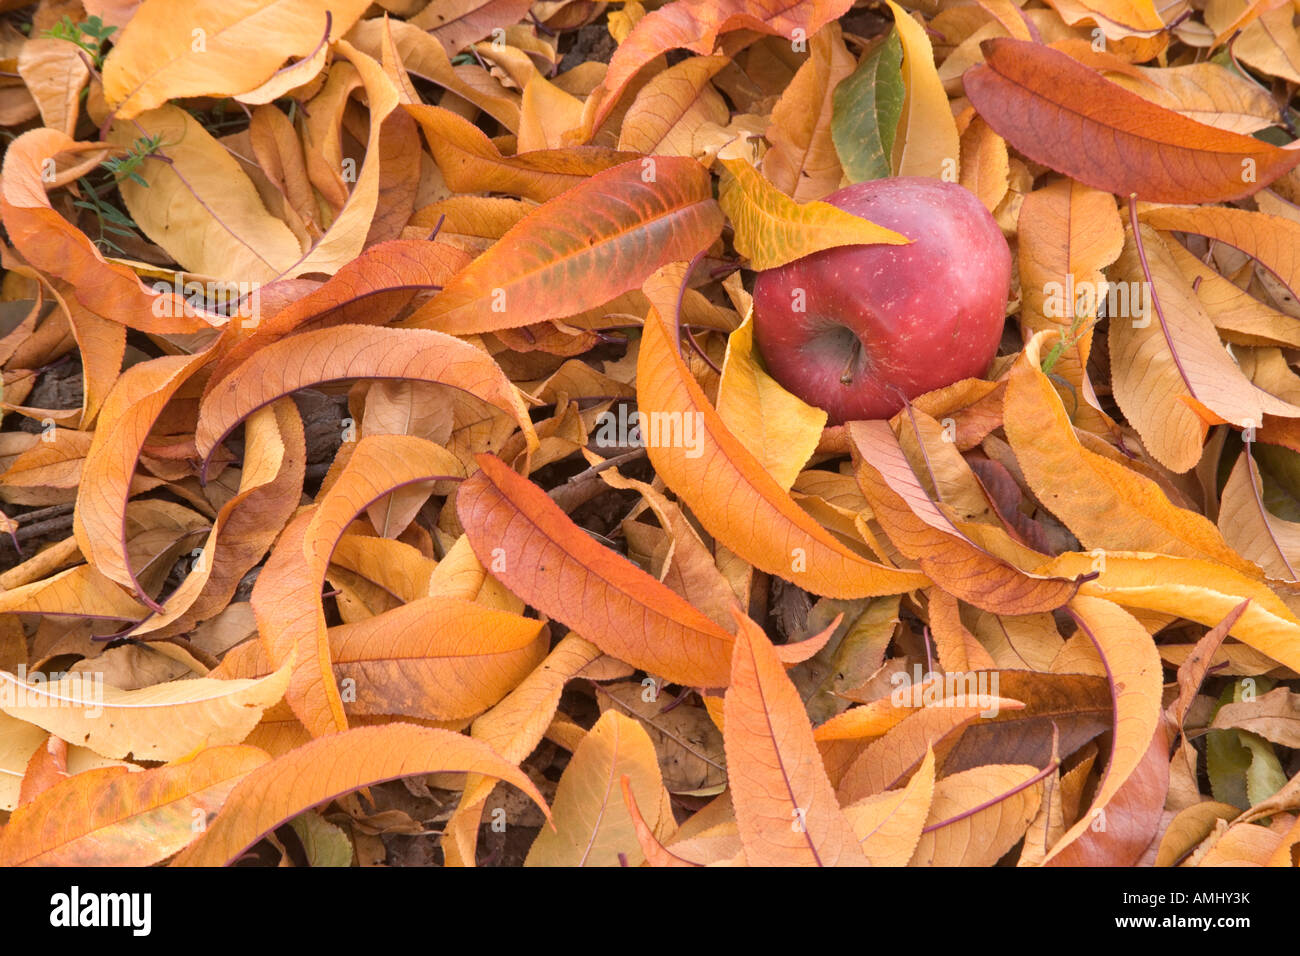 Fallen apple in autumn foliage. Stock Photo